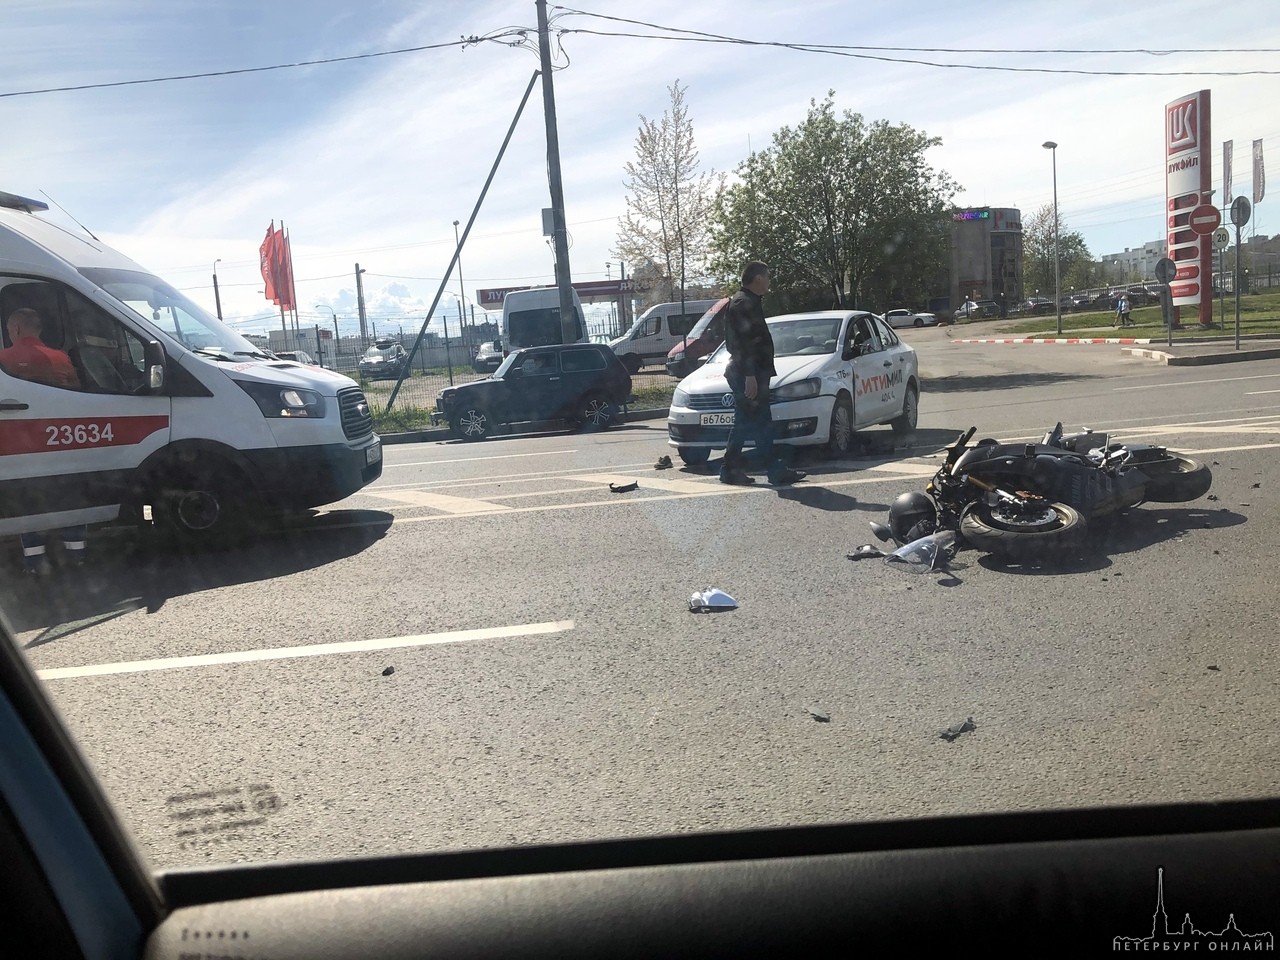 На перекрестке Комендантского и Шуваловского таксист сбил мотоциклиста. Скорая стоит, пилота не видн...